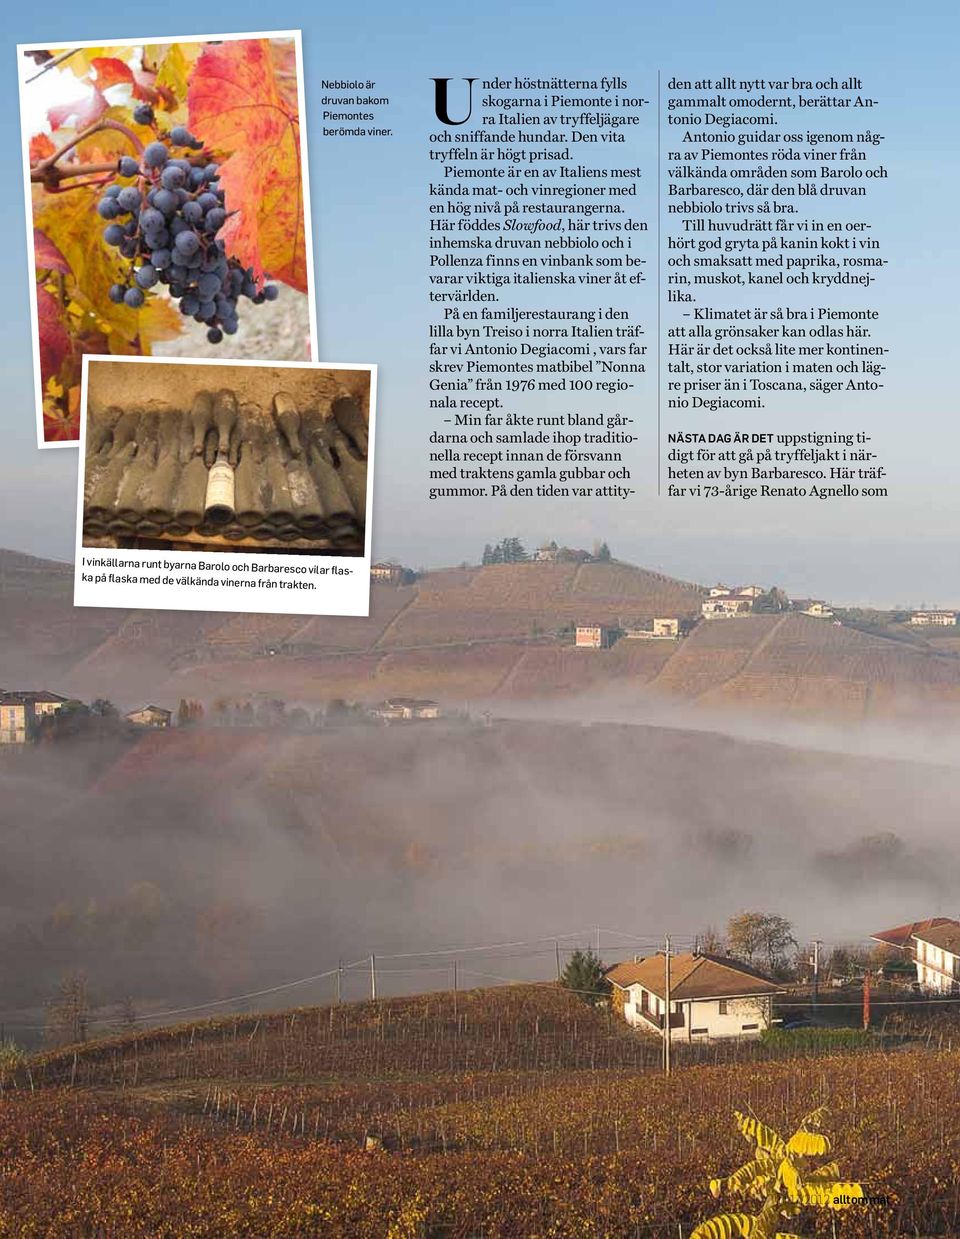 Här föddes Slowfood, här trivs den inhemska druvan nebbiolo och i Pollenza finns en vinbank som bevarar viktiga italienska viner åt eftervärlden.